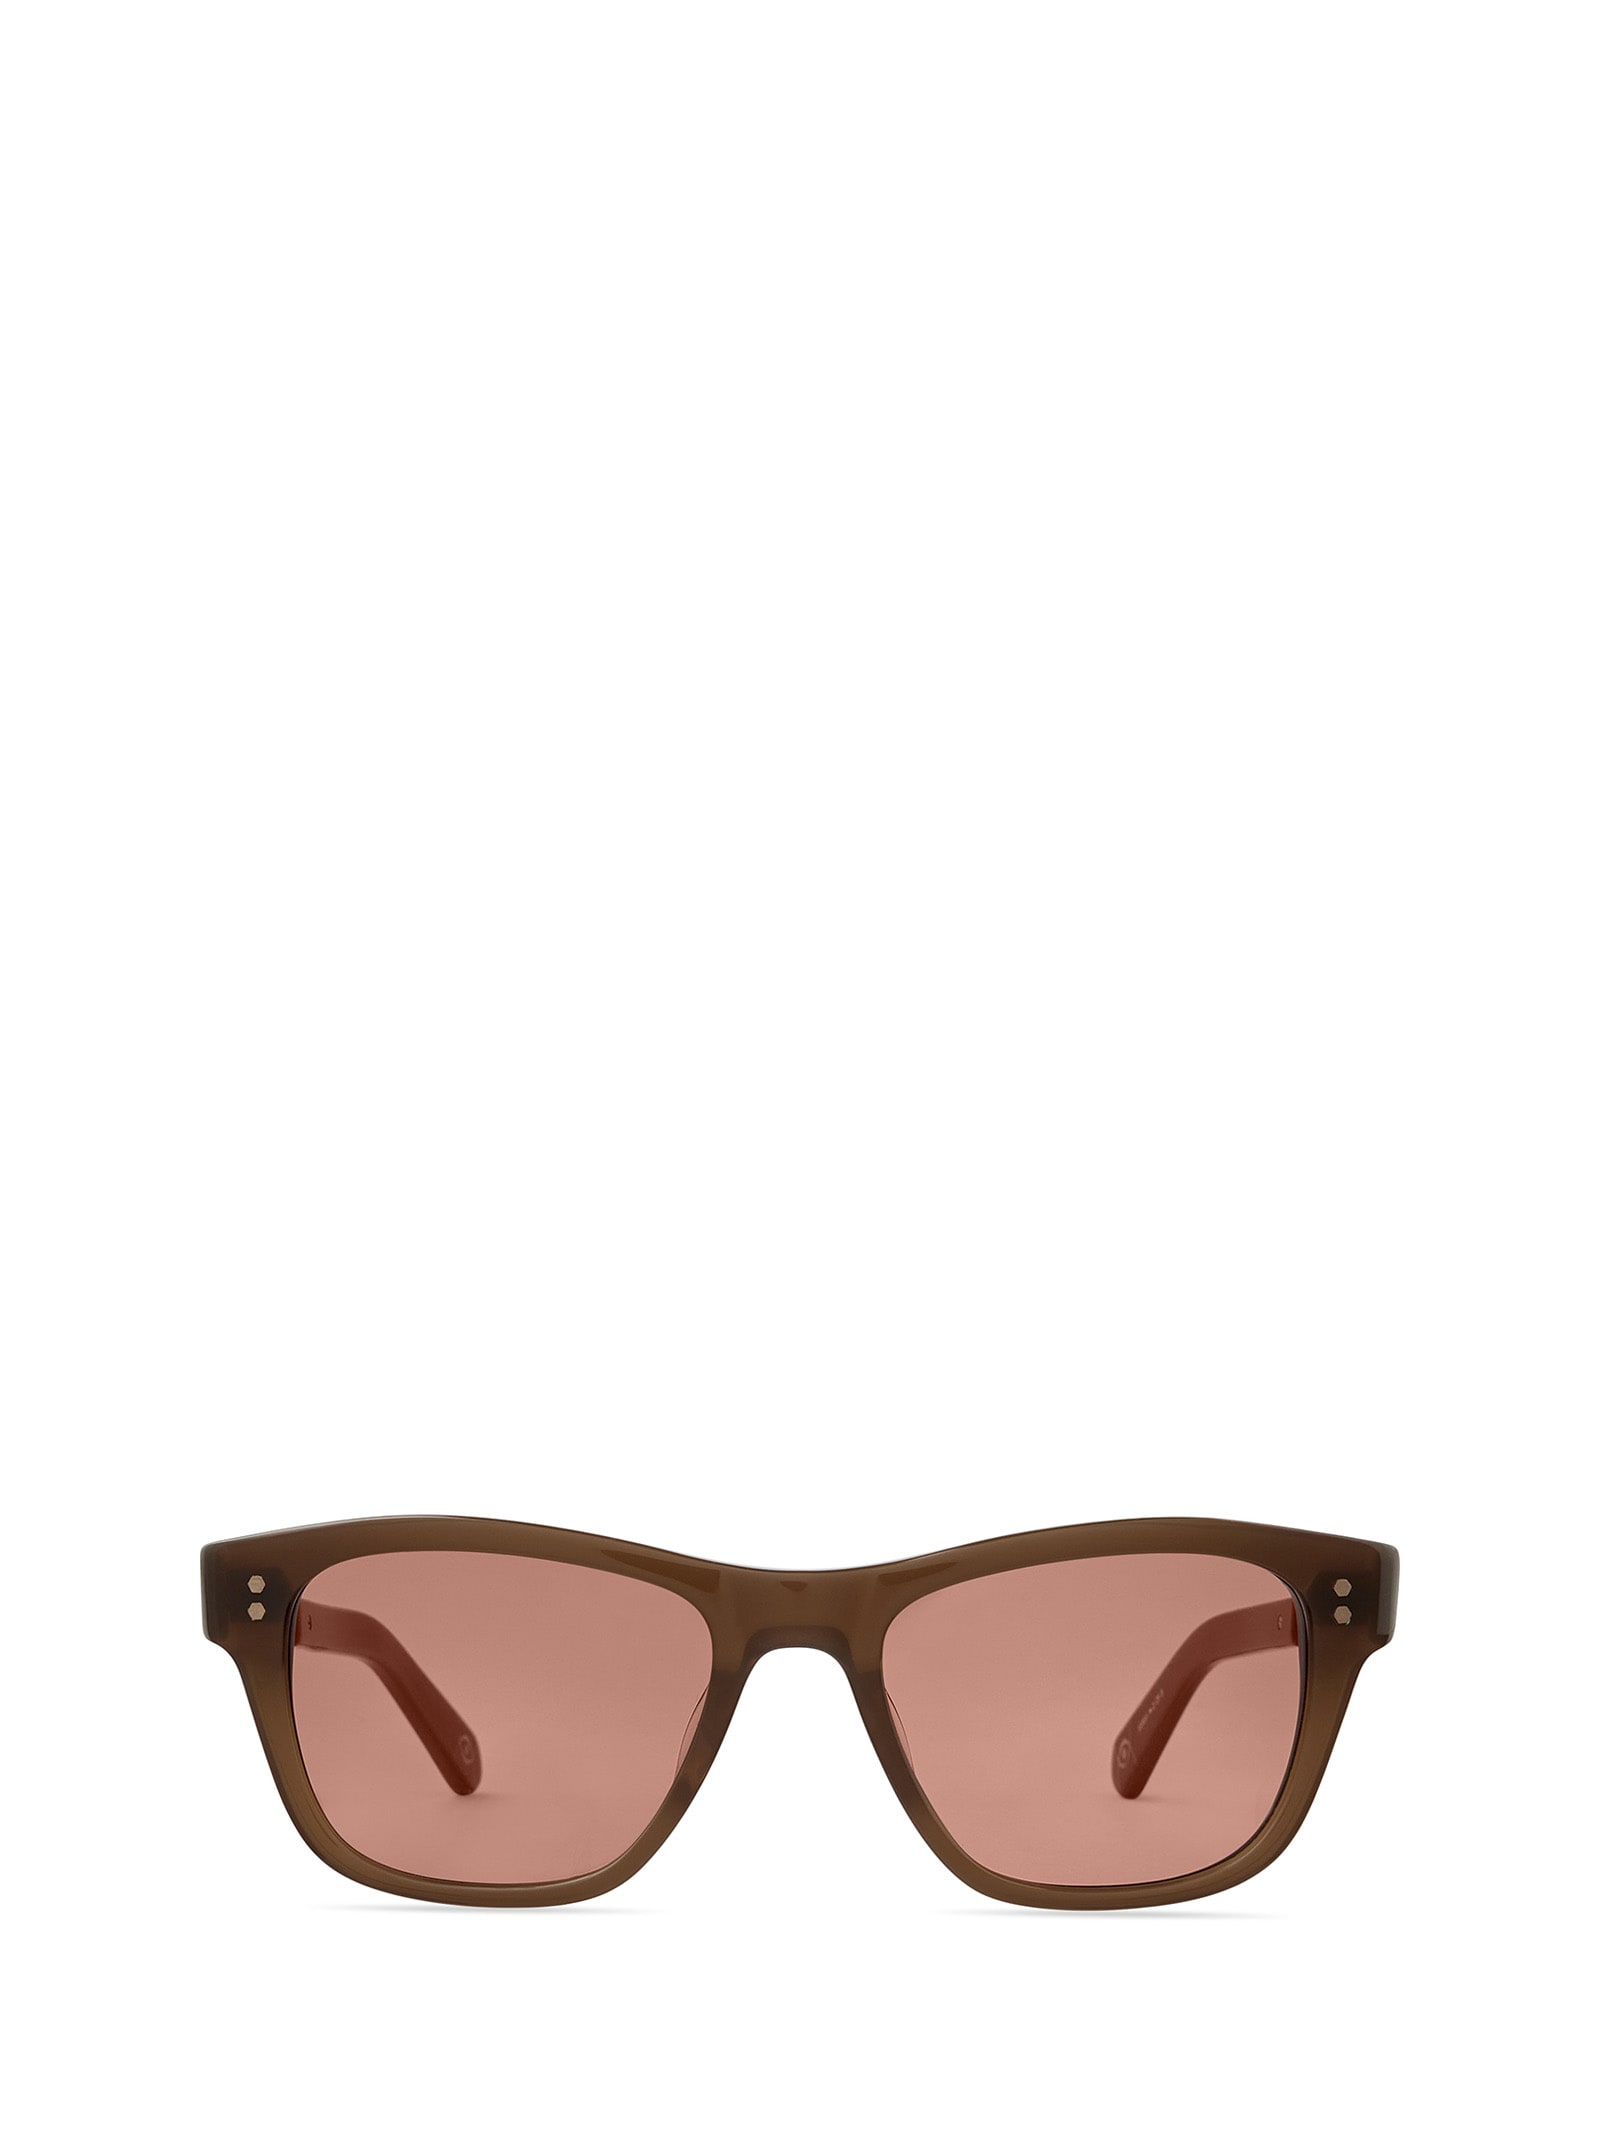 Damone S Citrine-white Gold/tahitian Rose Sunglasses